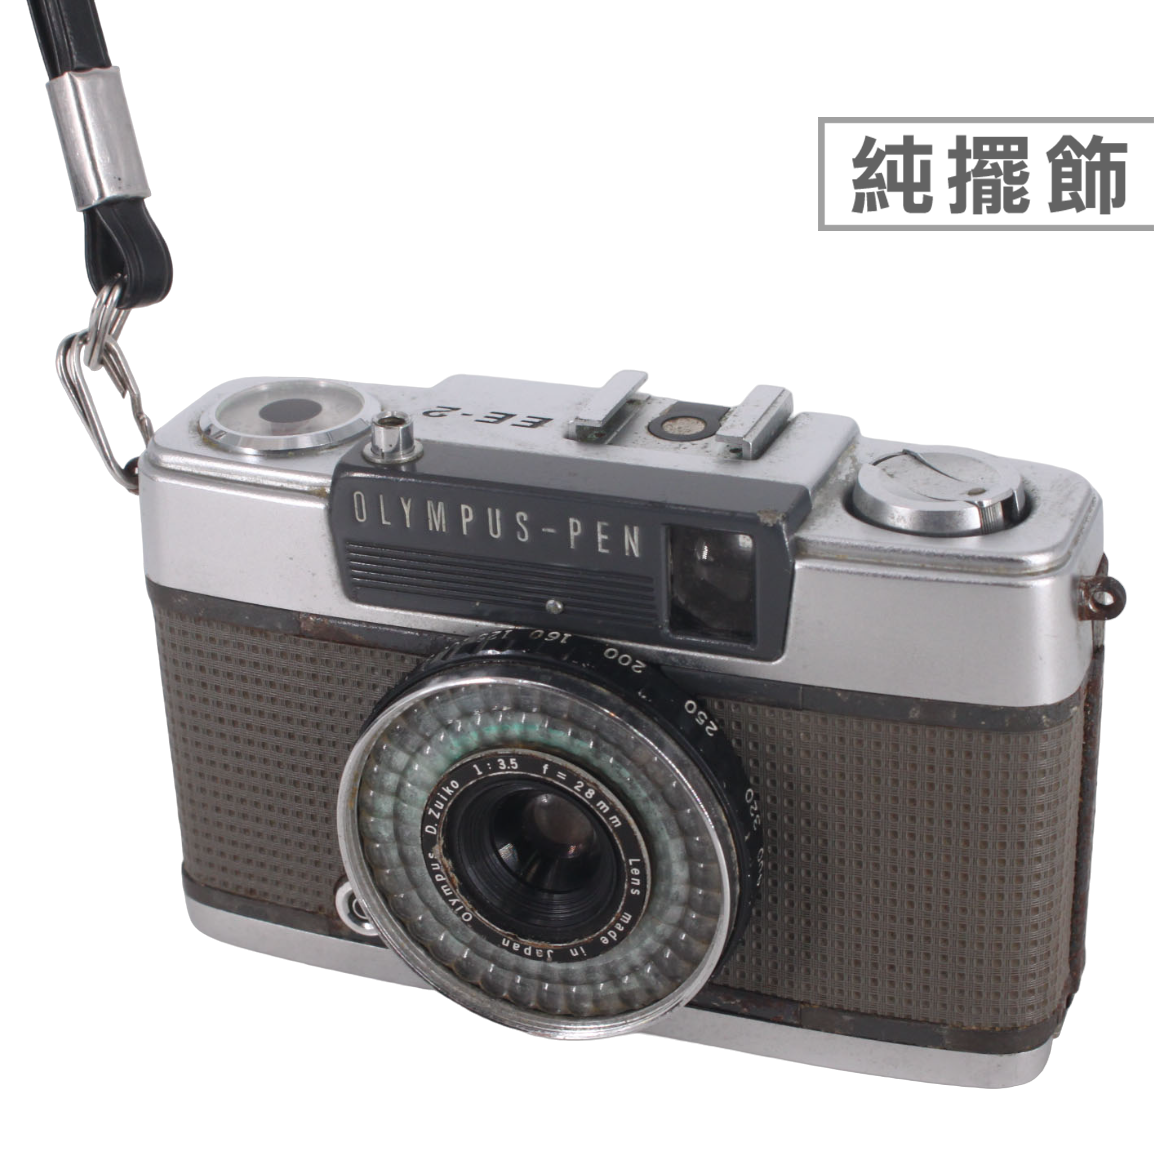 金卡價1088 二手日製OLYMPUS-PEN EE-2 古董底片相機早期純擺飾 